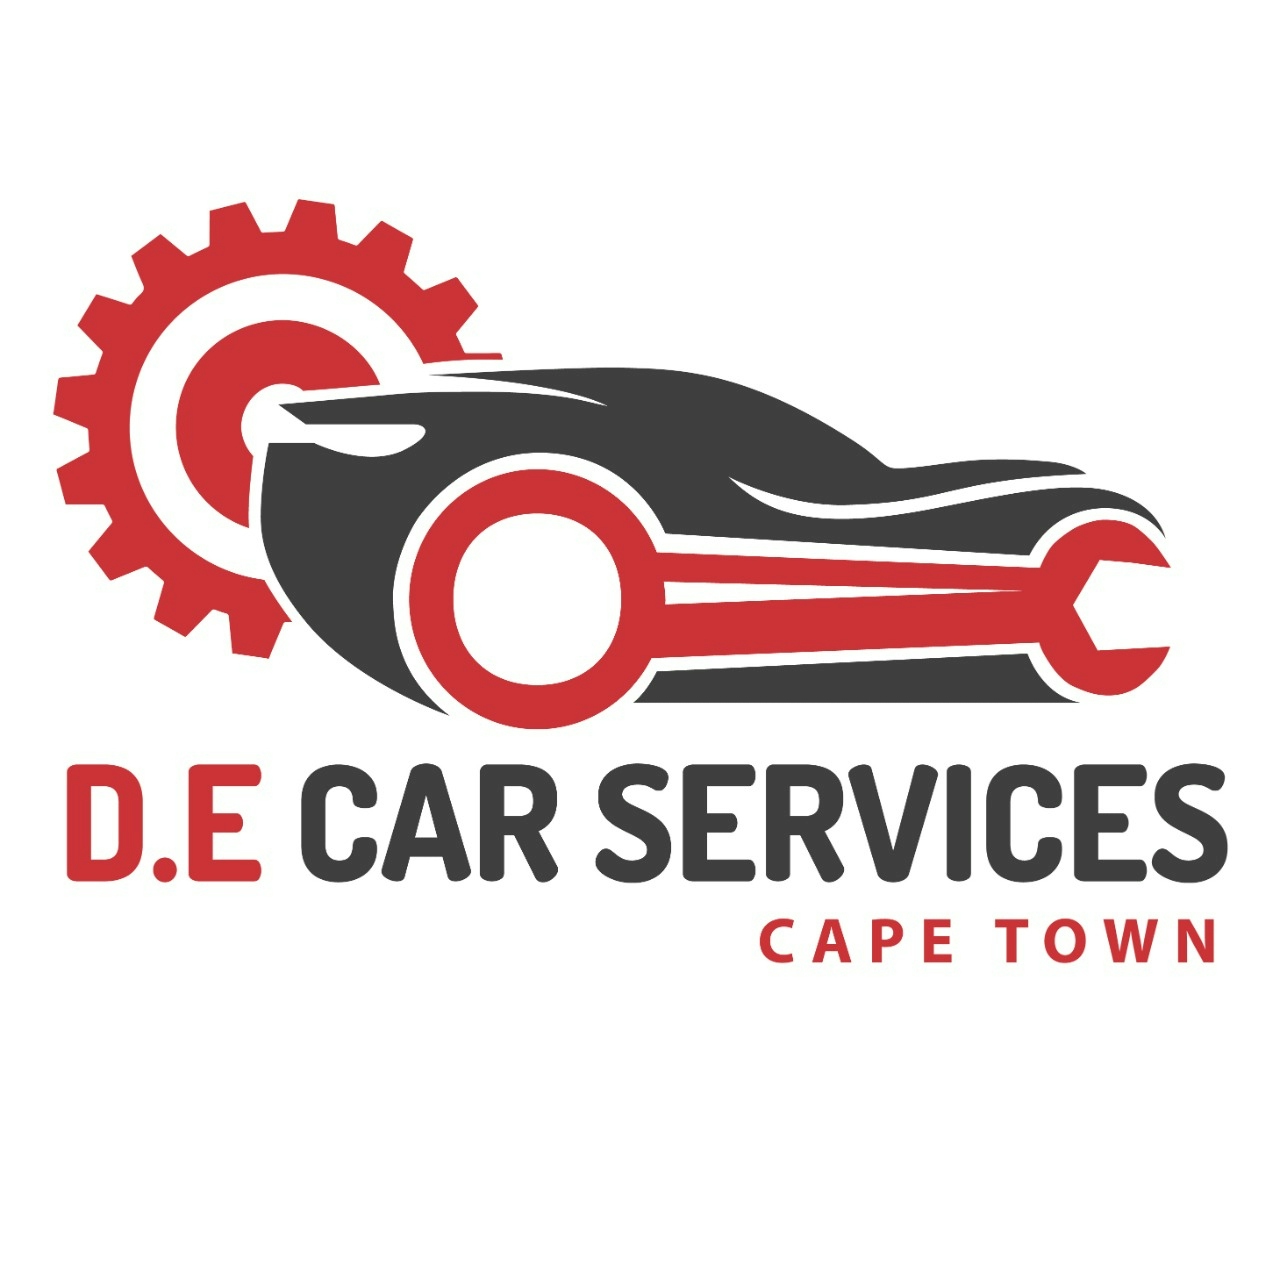 D.E CAR SERVICE'S